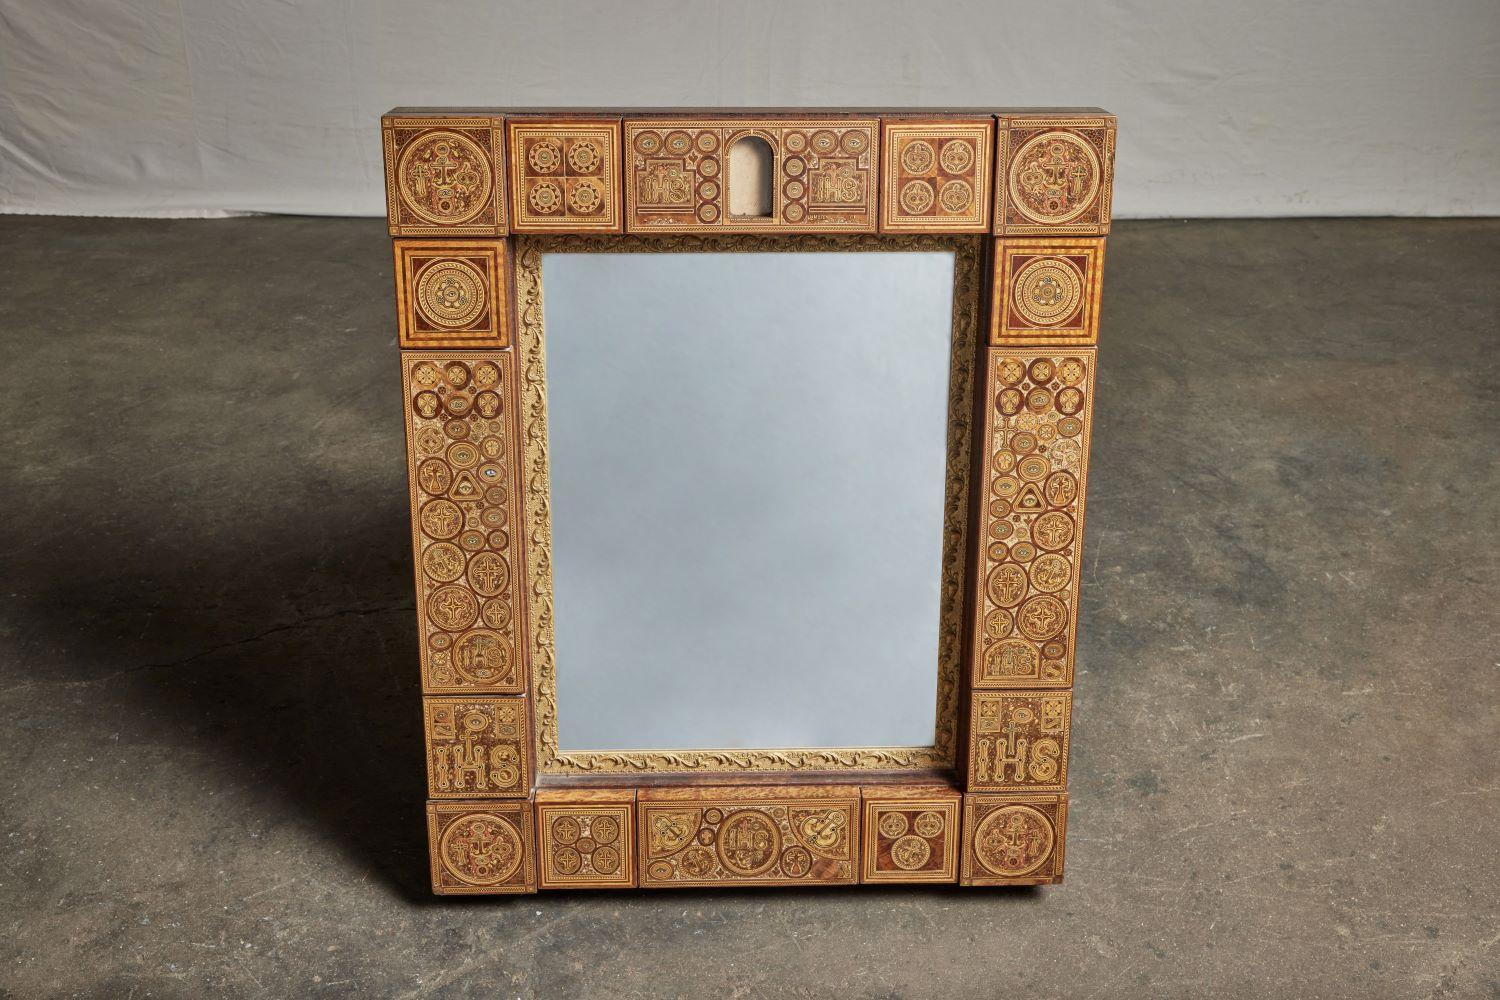 miroir en bois marqueté du Moyen-Orient du 19e siècle.